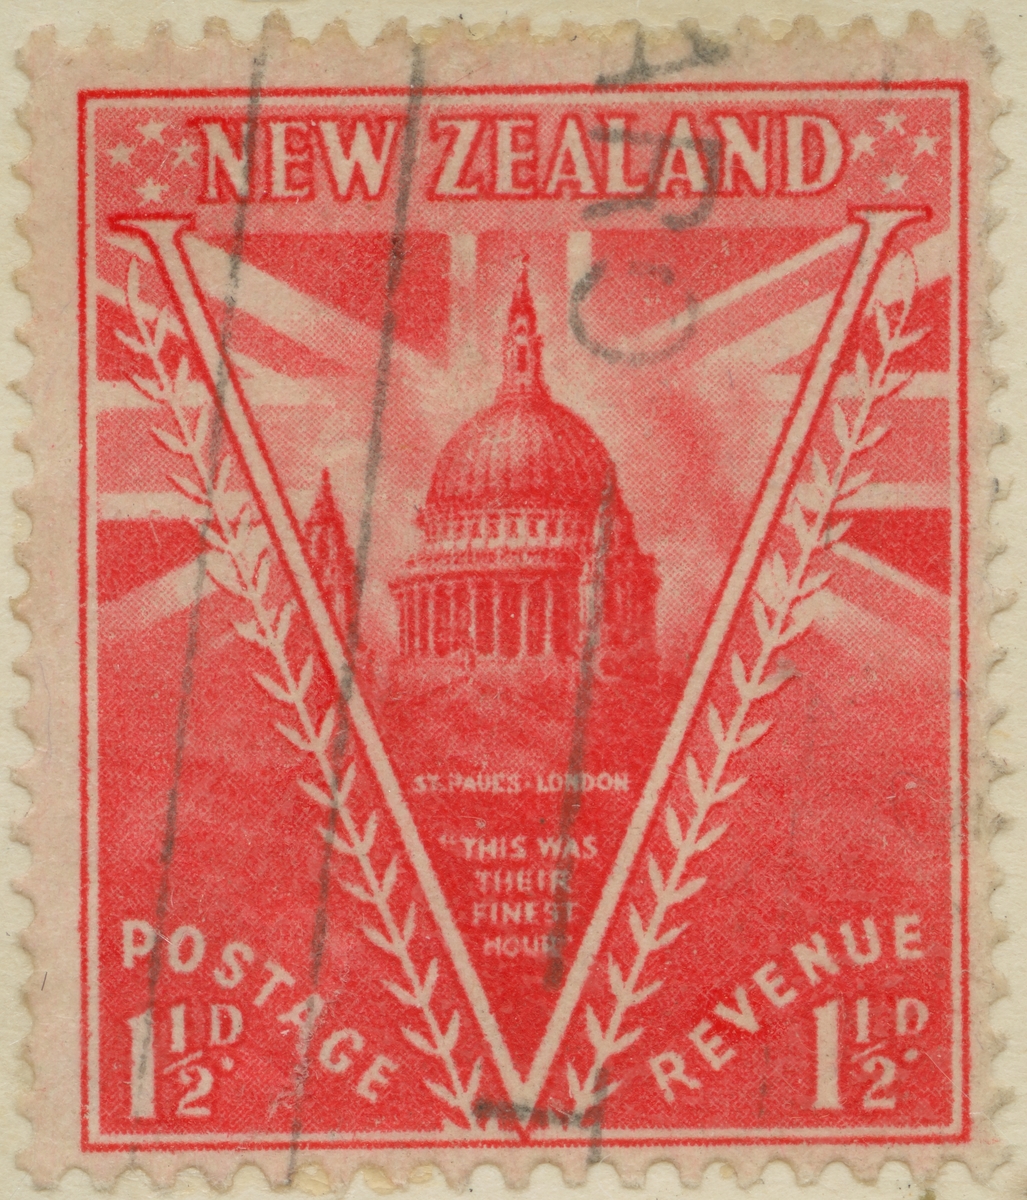 Frimärke ur Gösta Bodmans filatelistiska motivsamling, påbörjad 1950.
Frimärke från Nya Zeeland, 1946. Motiv av St. Paulskatedralen i London.